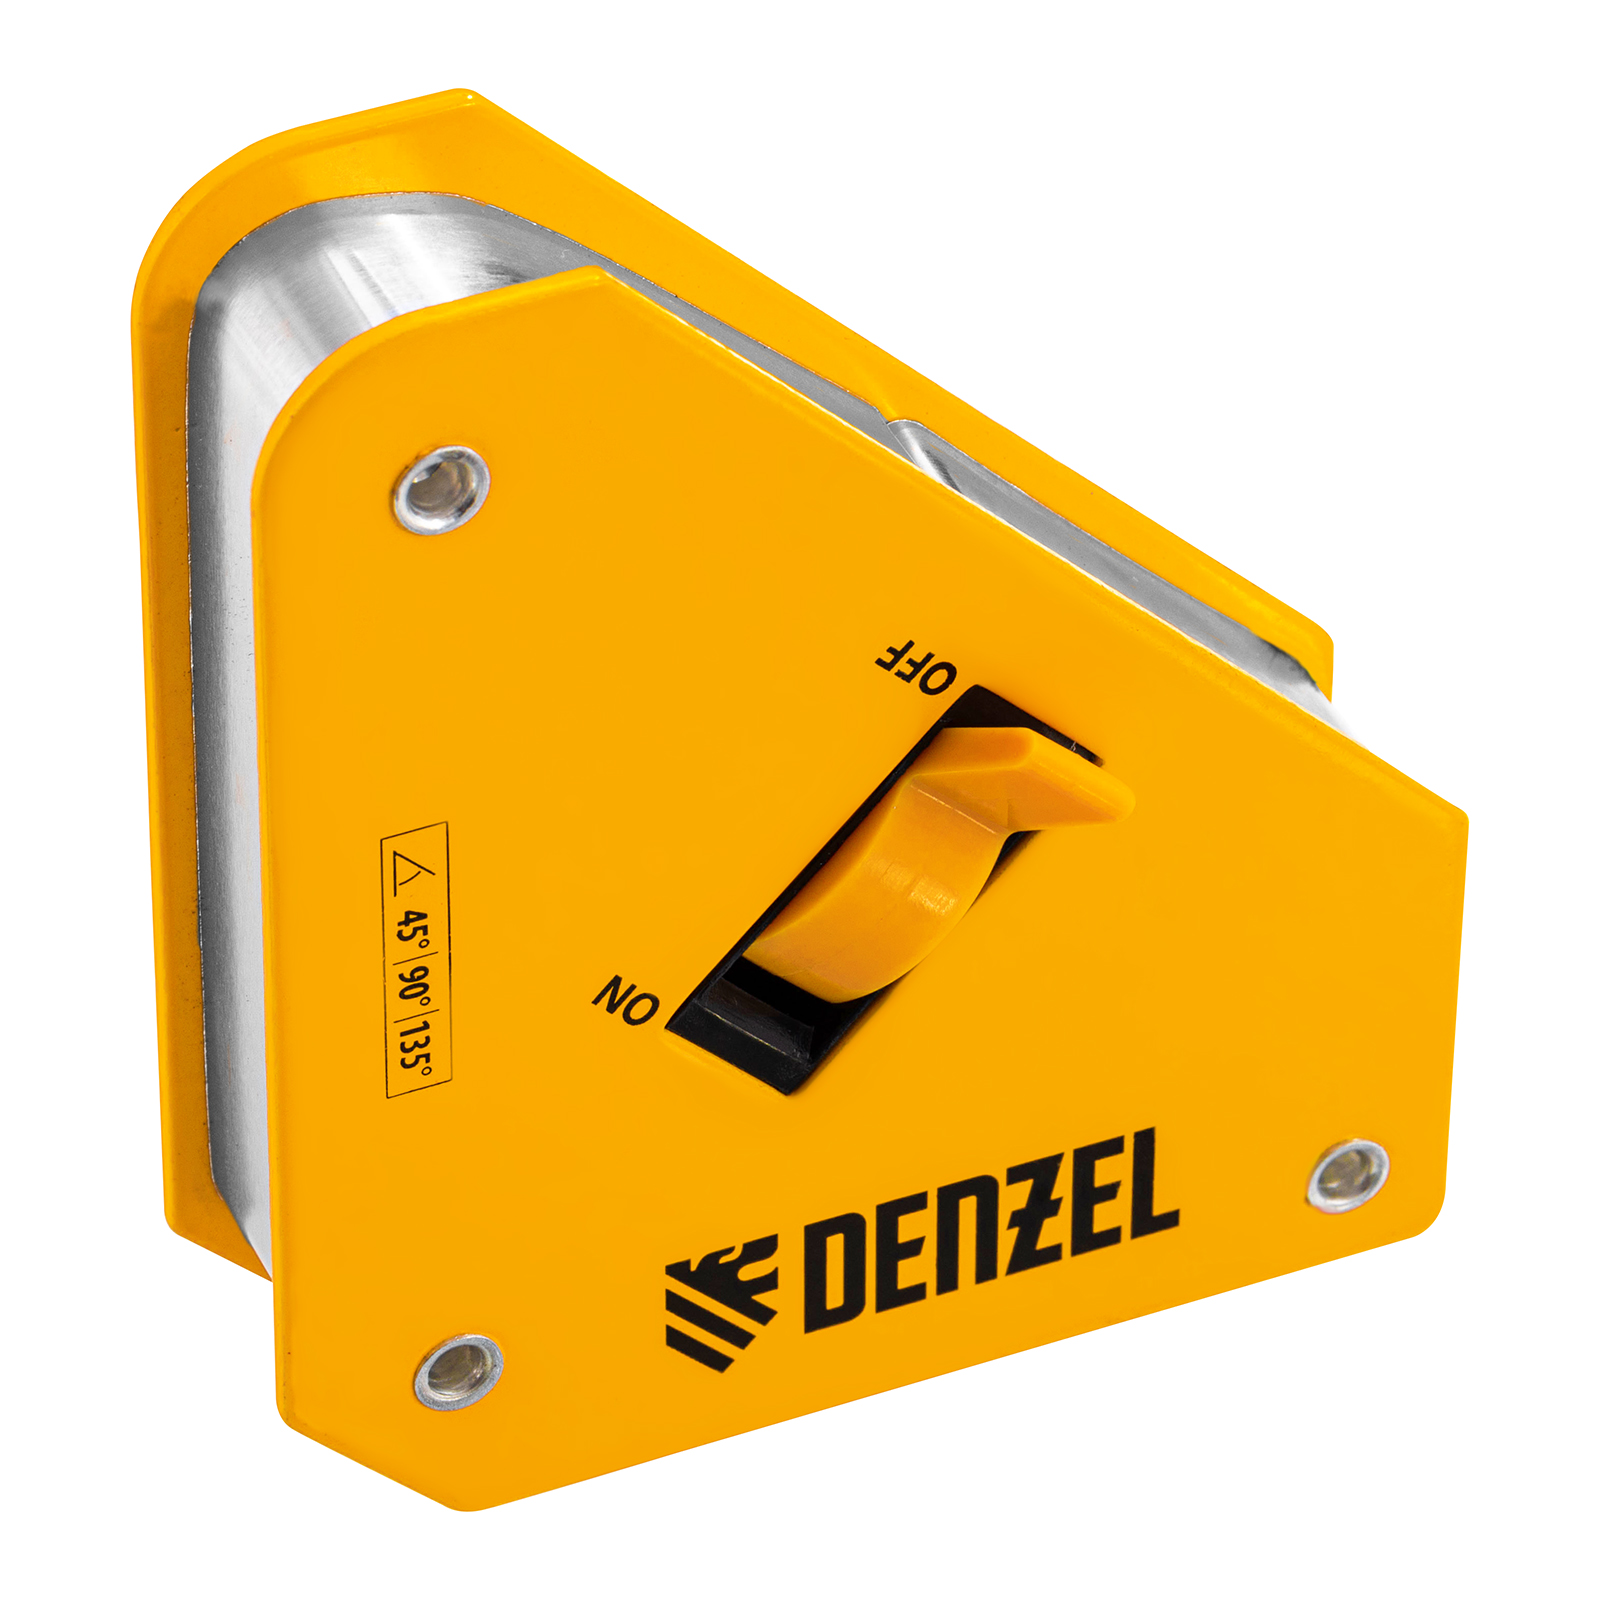 Фиксатор магнитный отключаемый для сварочных работ DENZEL усилие 30 LB, 45х90 град. 97561 фиксатор магнитный отключаемый для сварочных работ denzel усилие 30 lb 45х90 град 97561